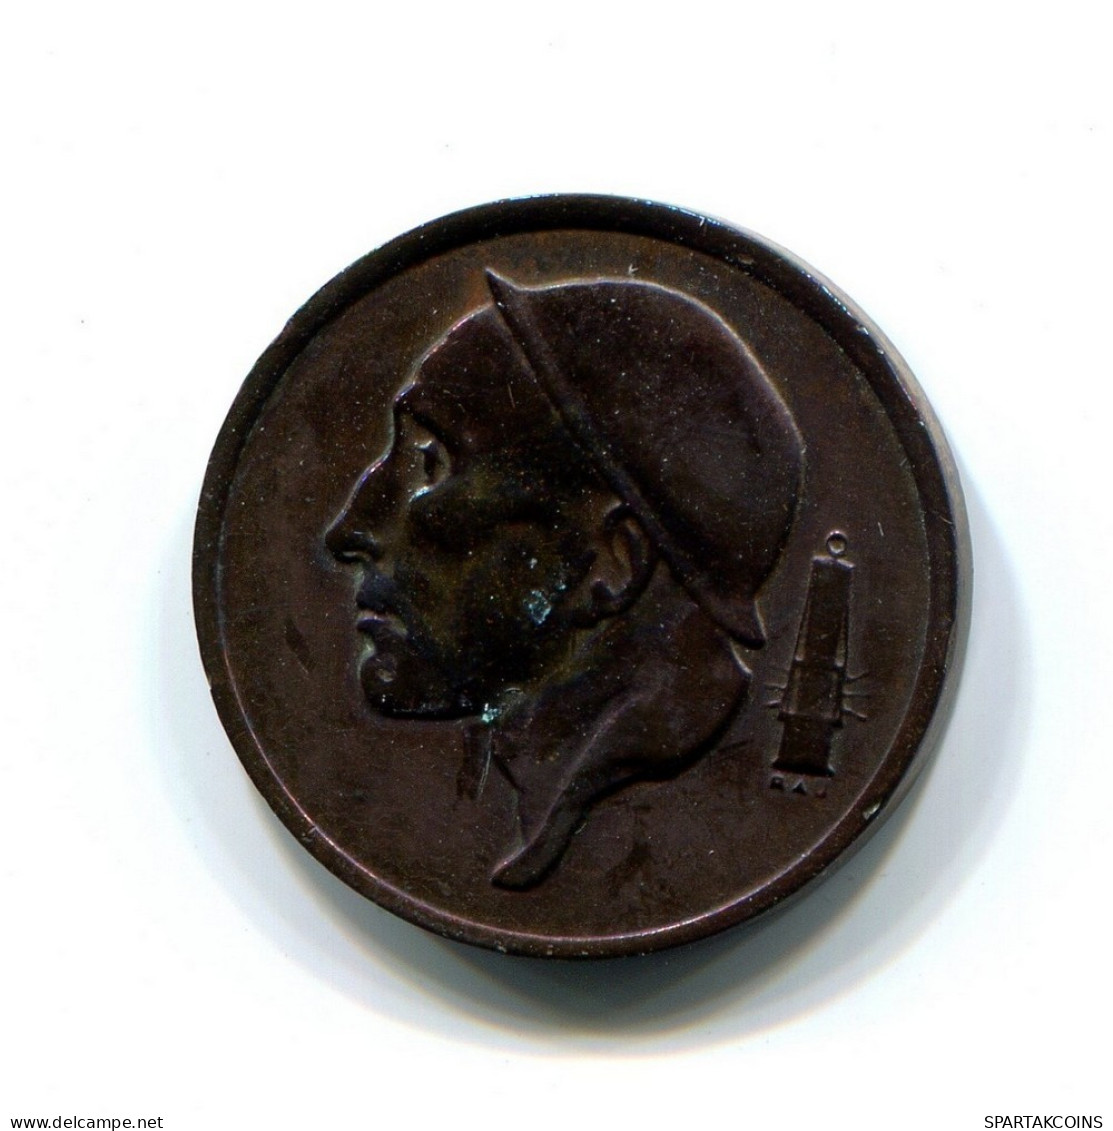 50 CENTIMES 1977 DUTCH Text BELGIUM Coin #BB391.U.A - 50 Cents